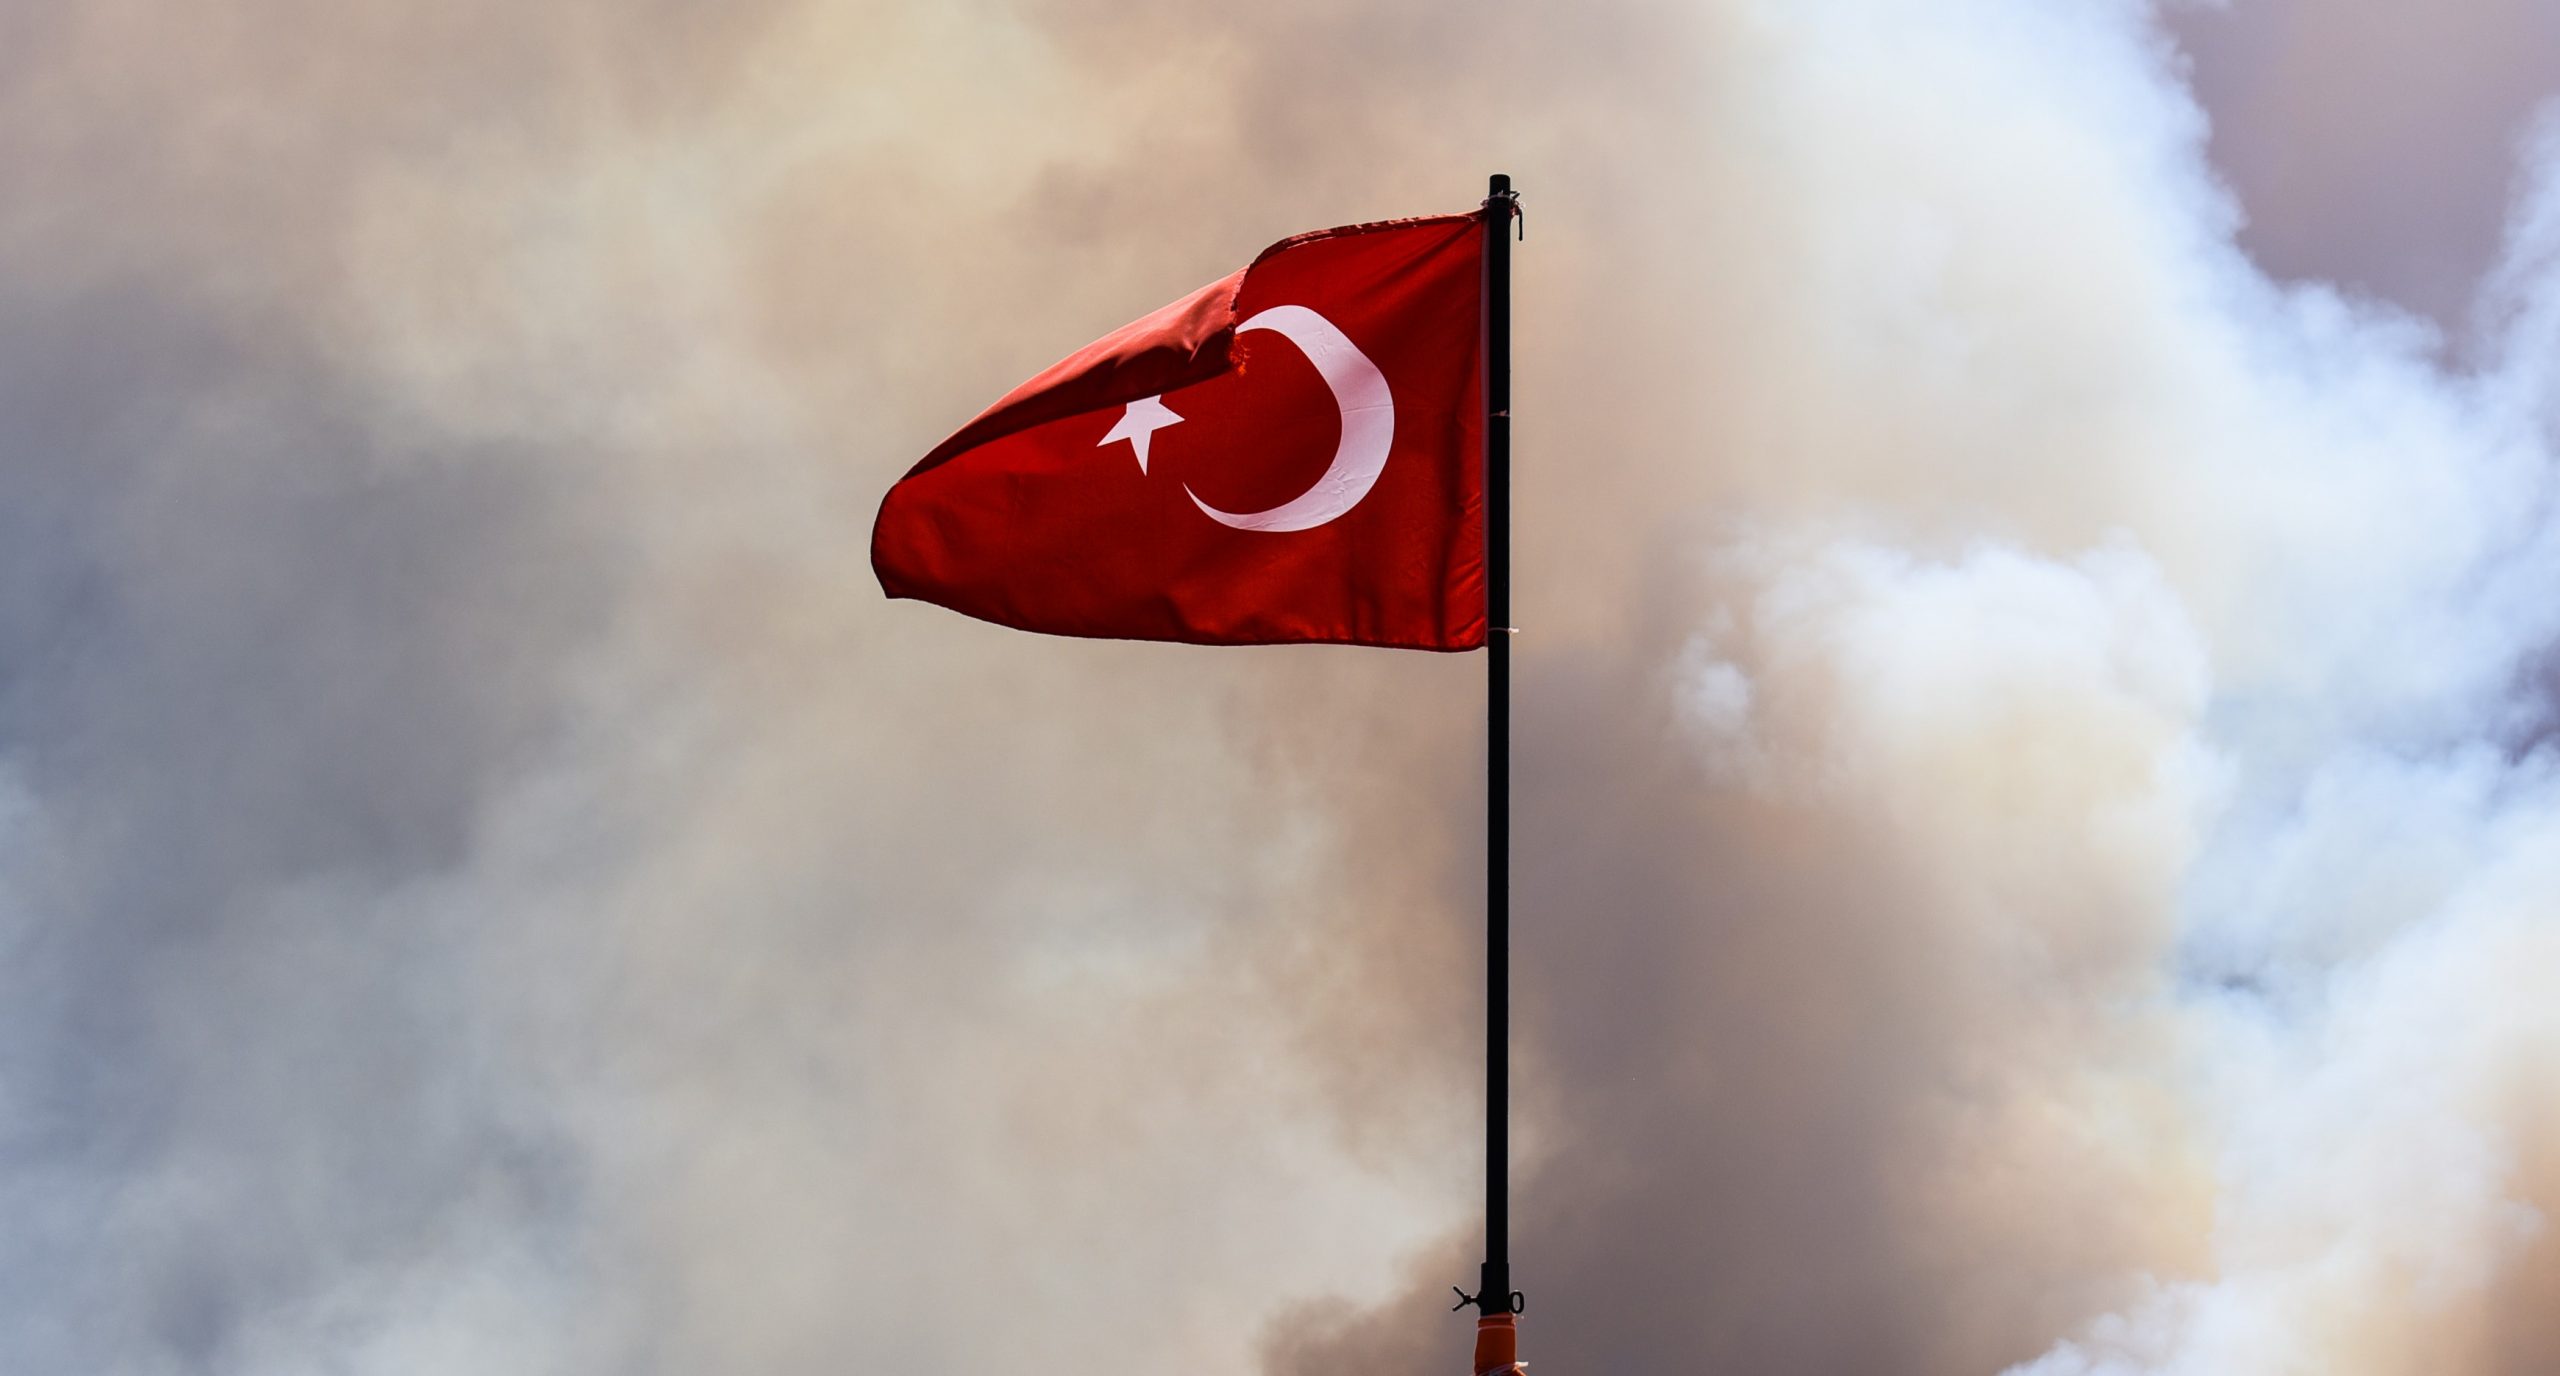 كيف حفزت الكوارث الطبيعية الصراع بين النظام التركي والمعارضة؟